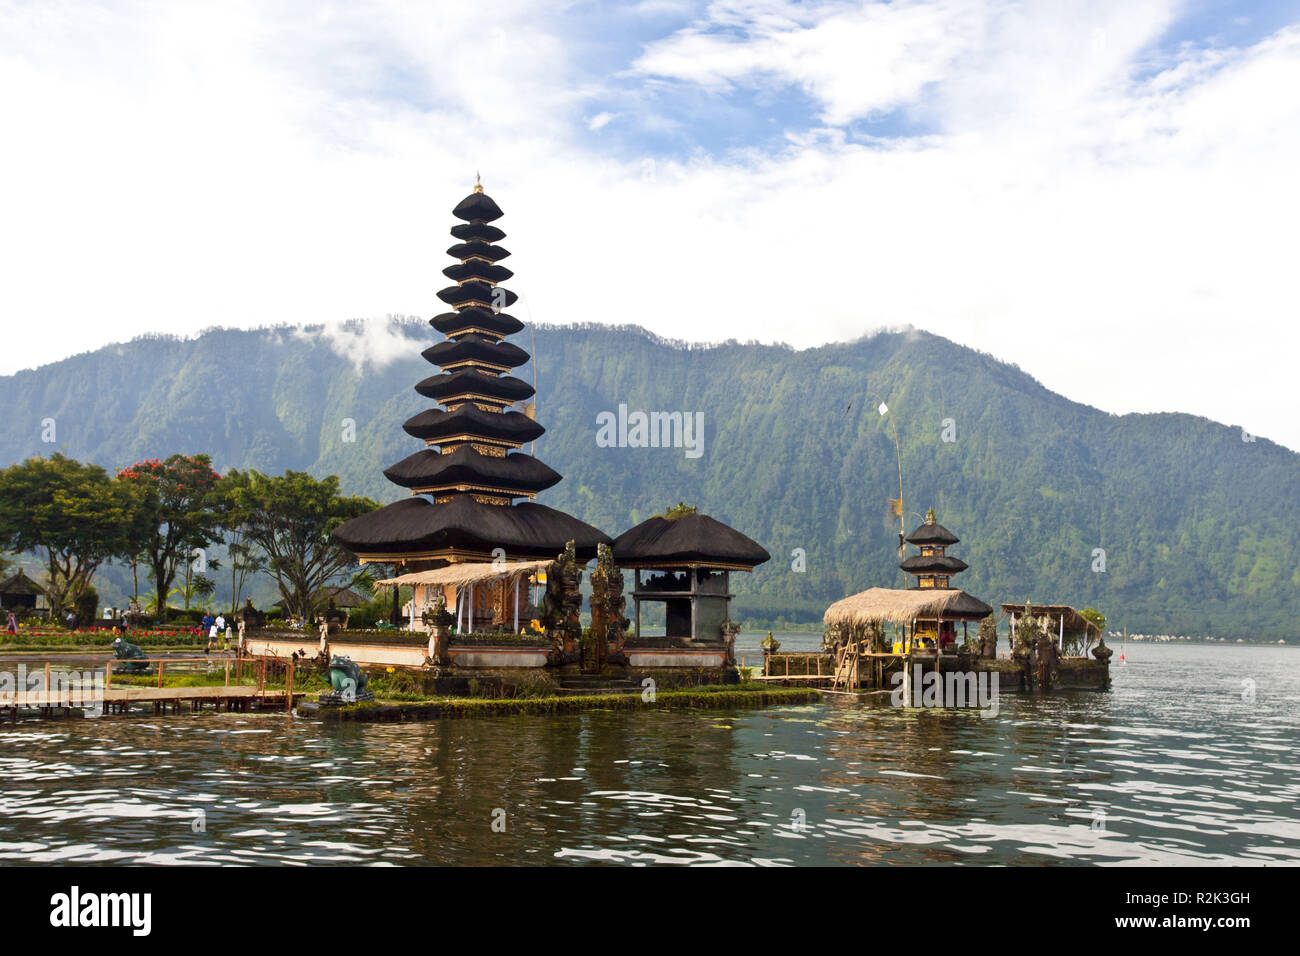 Indonesia, Bali, Bedugul, temple 'Pura Ulun Danu' in the Bratan lake, Stock Photo